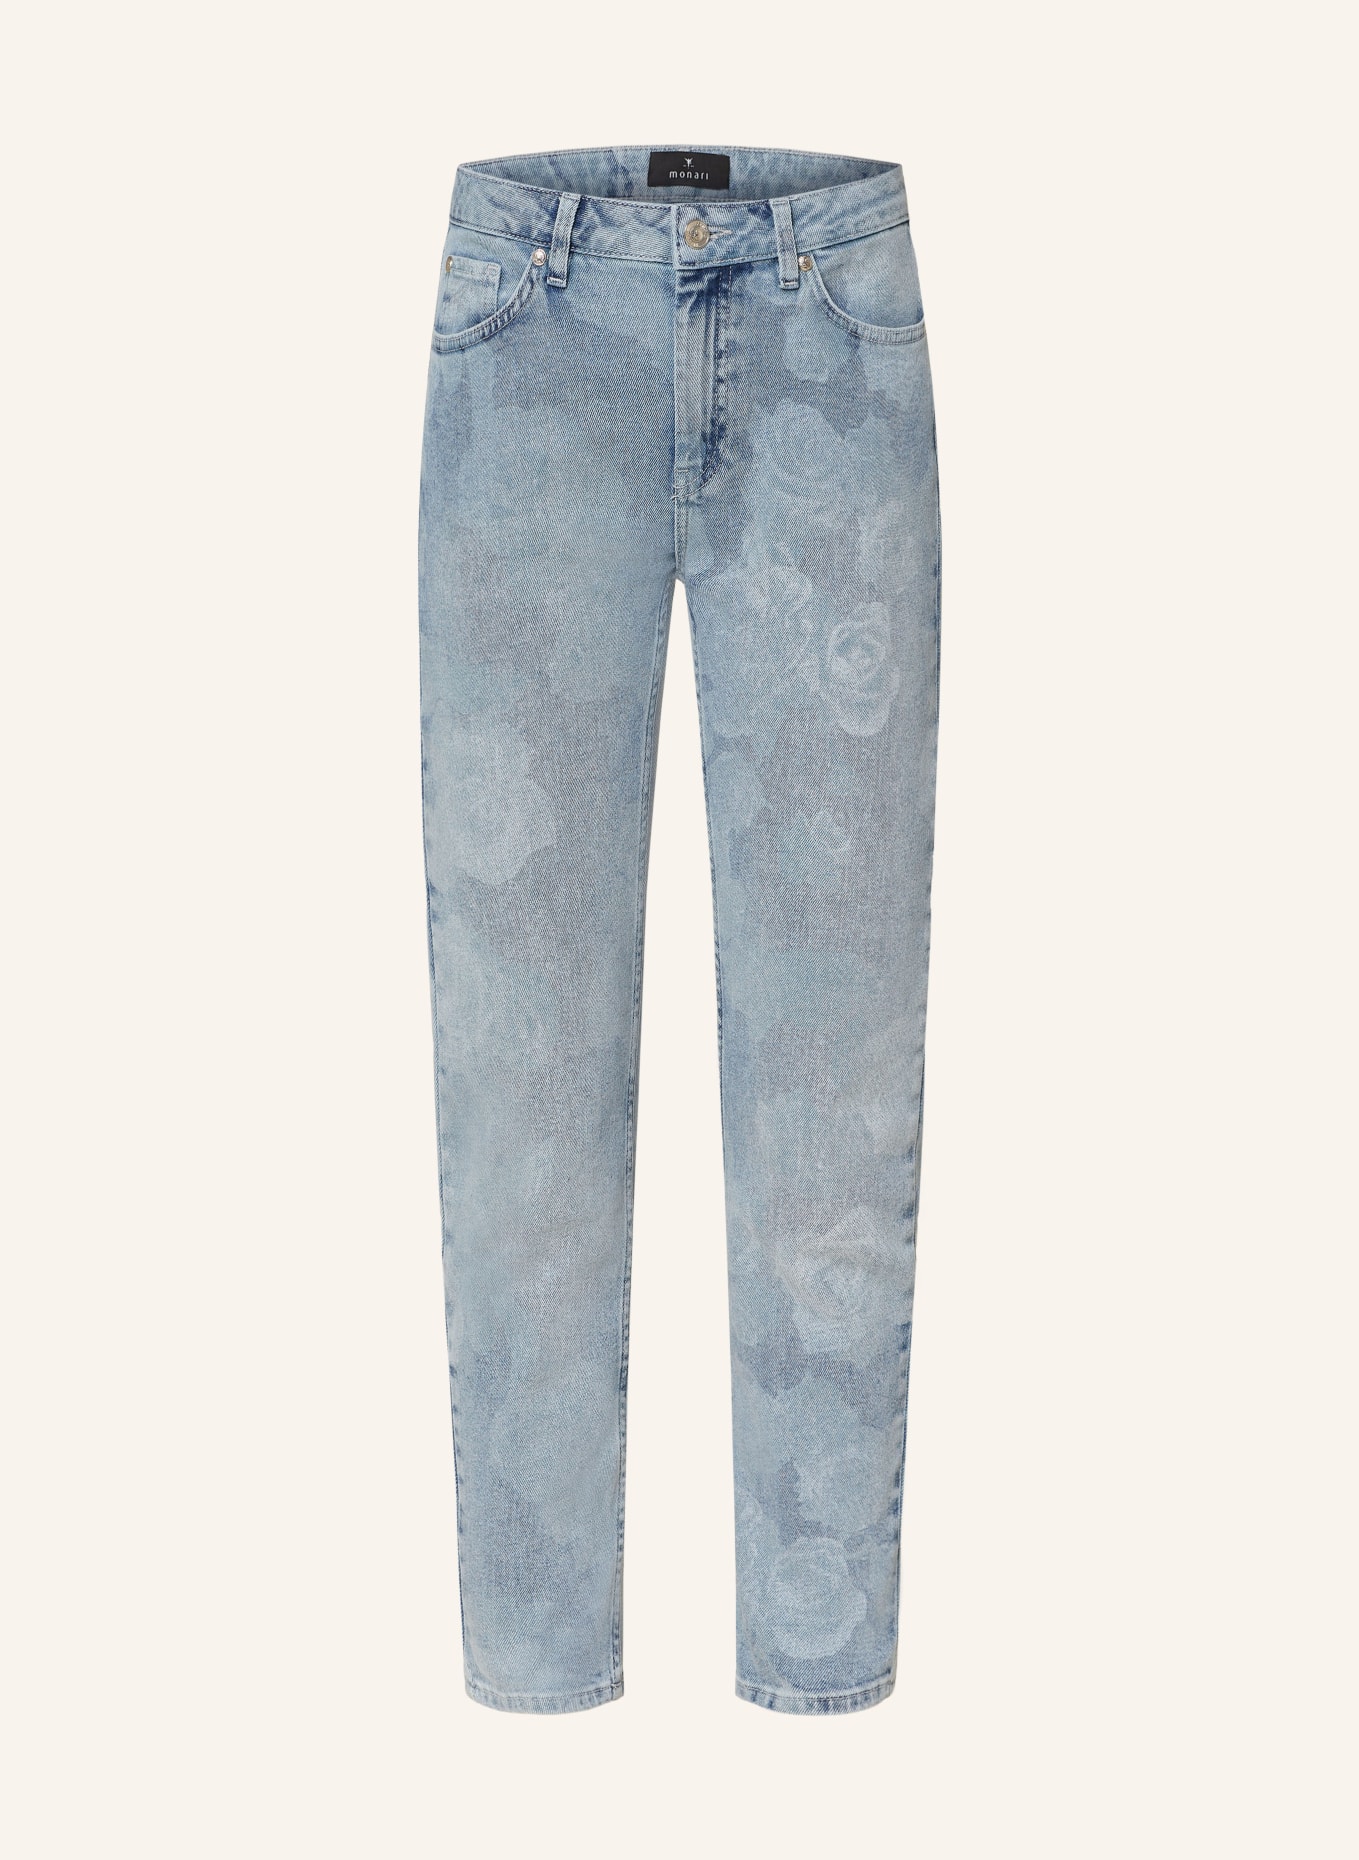 monari 7/8 Jeans, Color: 750 jeans (Image 1)